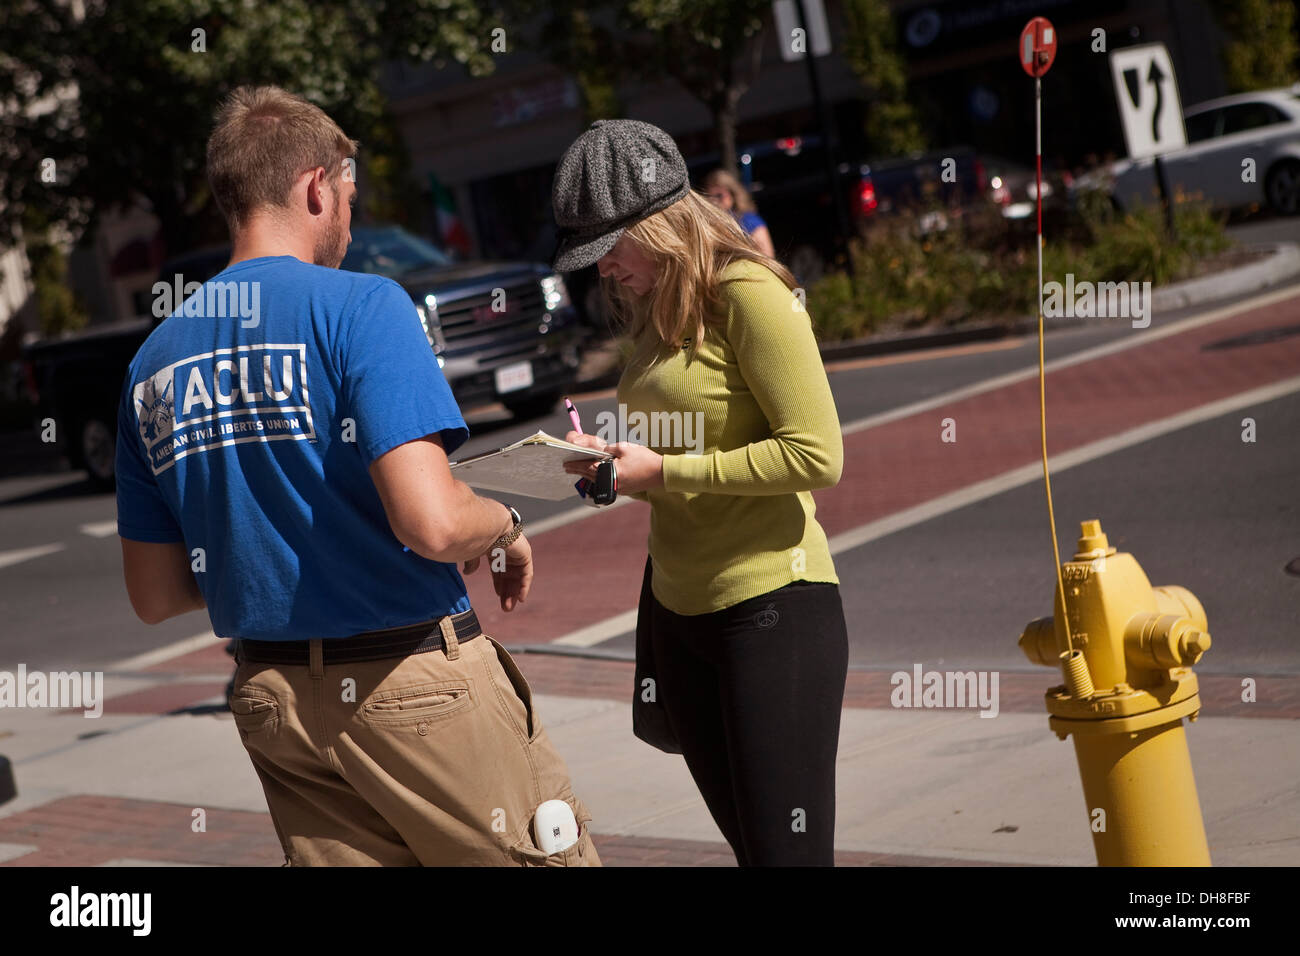 Un homme portant une chemise ACLU pose une femme à signer une pétition dans la ville Banque D'Images